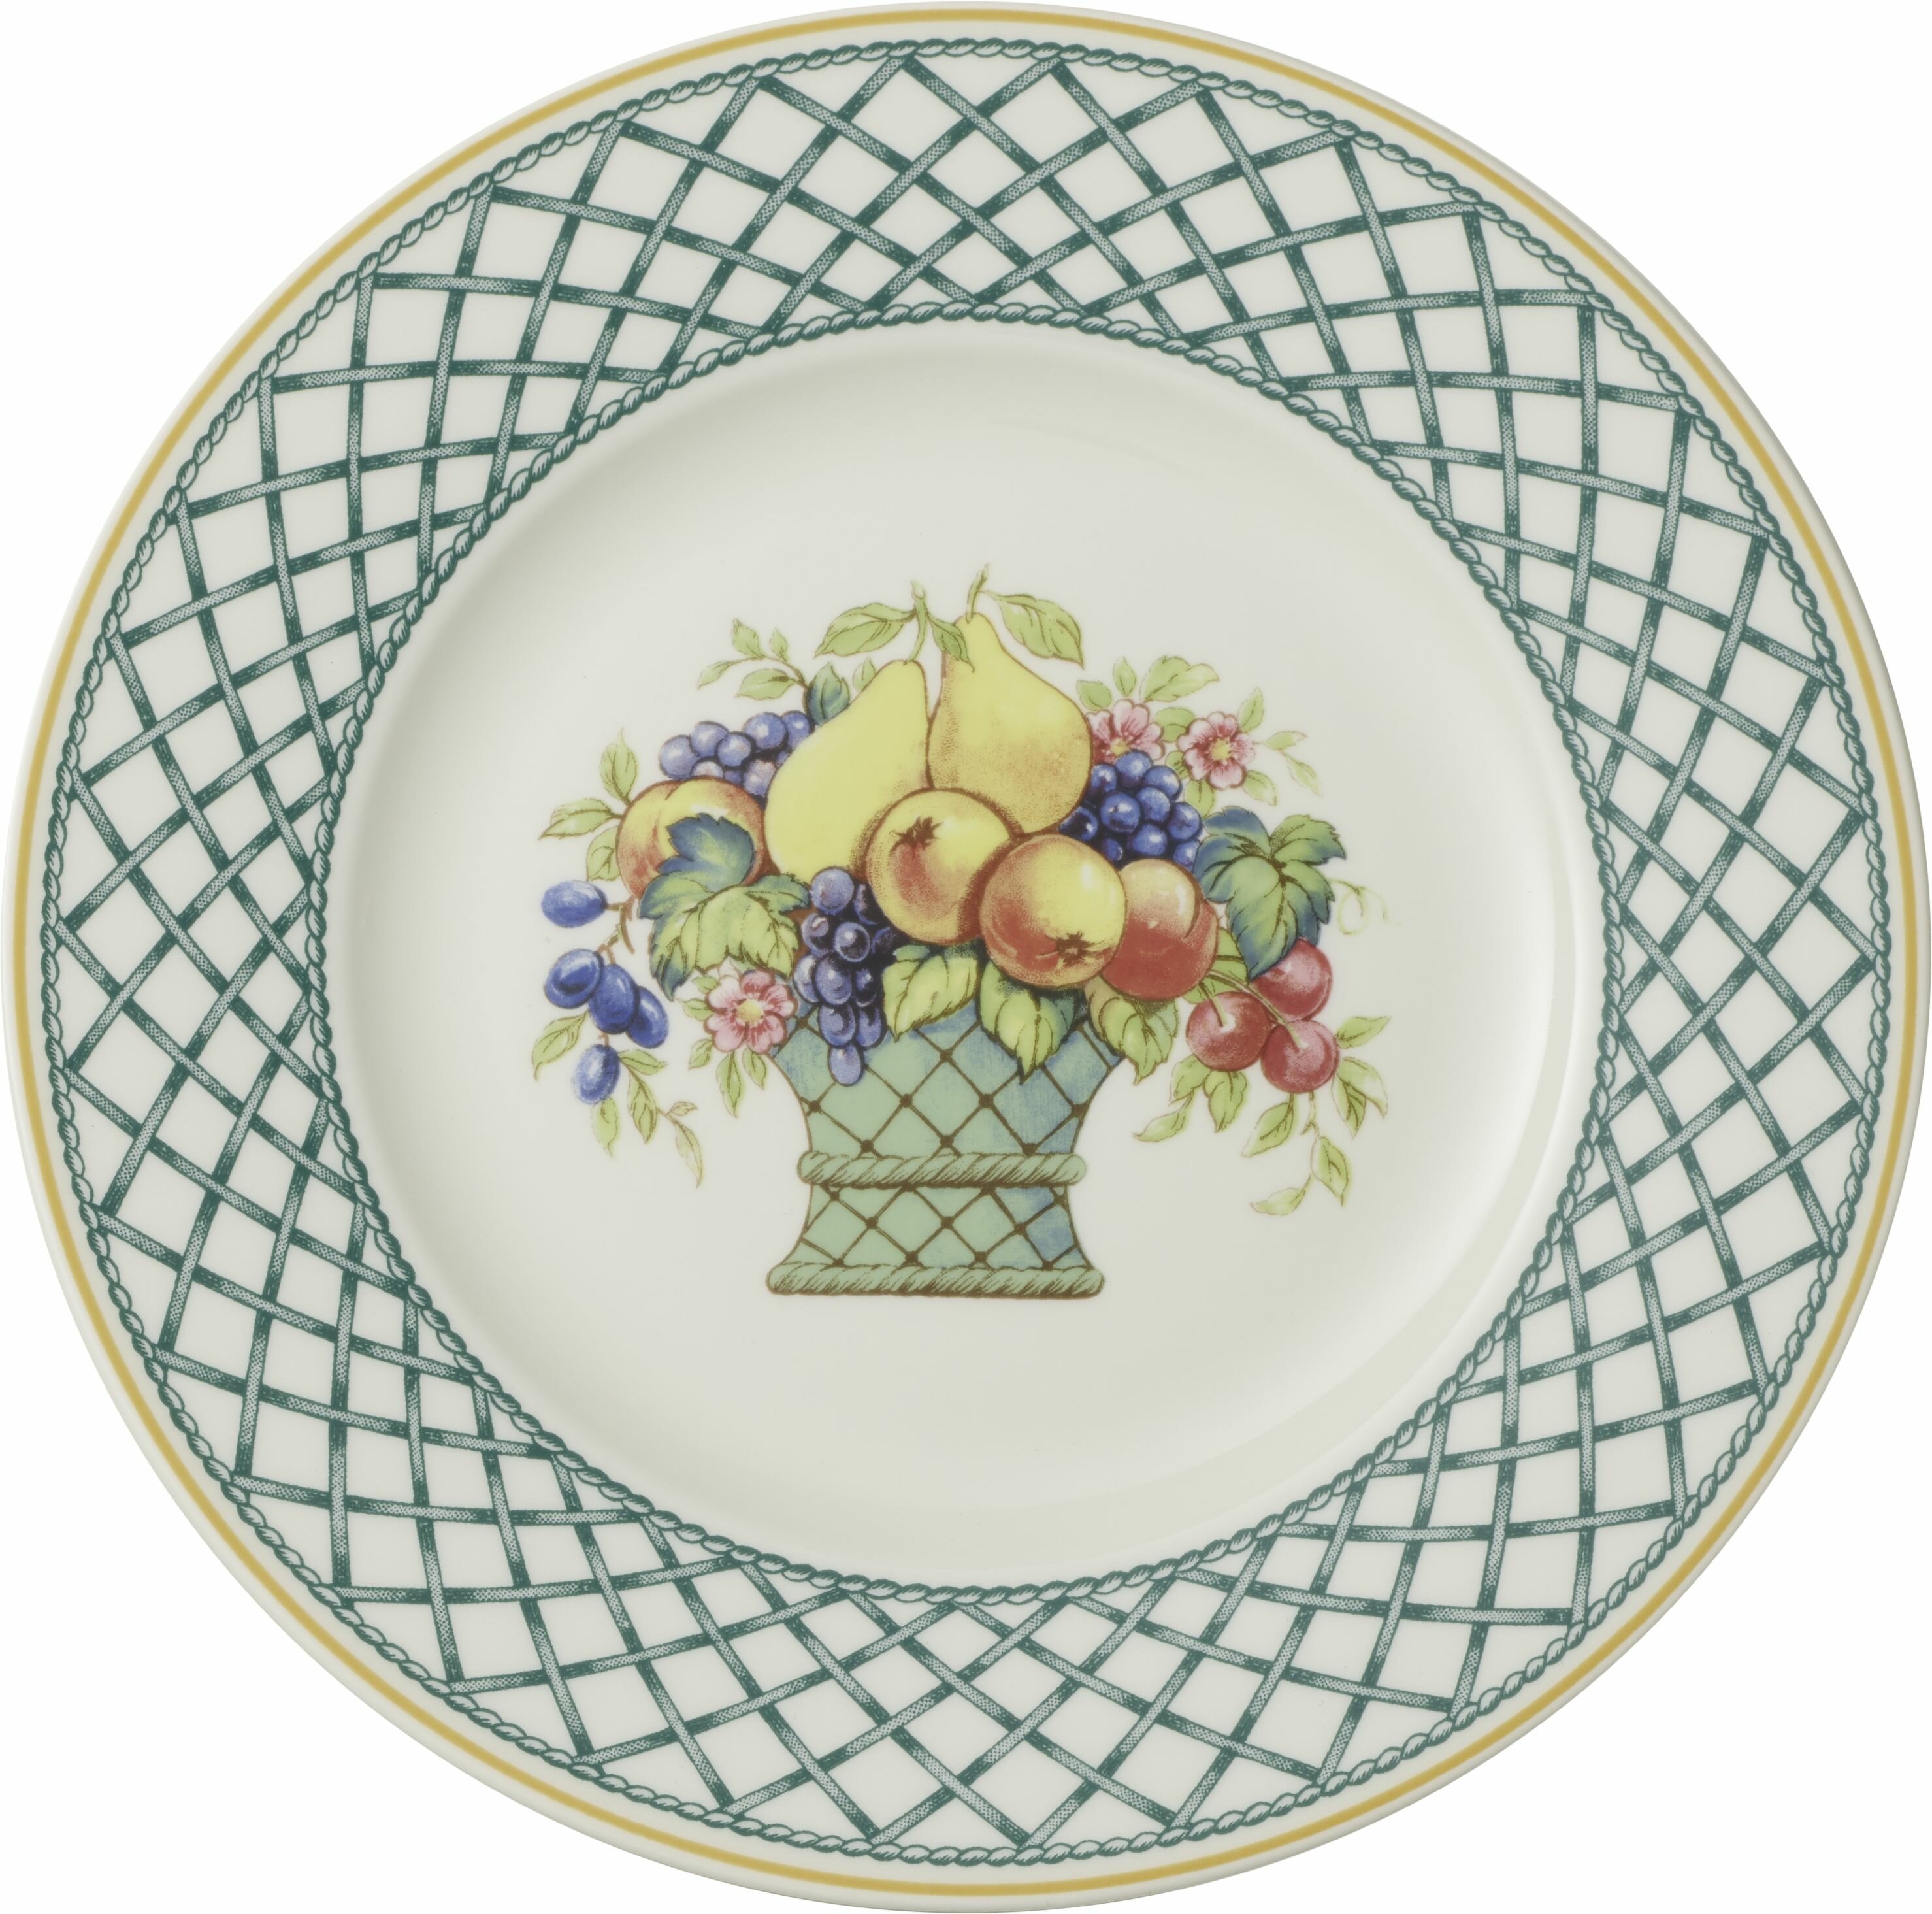 Villeroy Boch Basket Garden Dinner Plate Reviews Wayfair